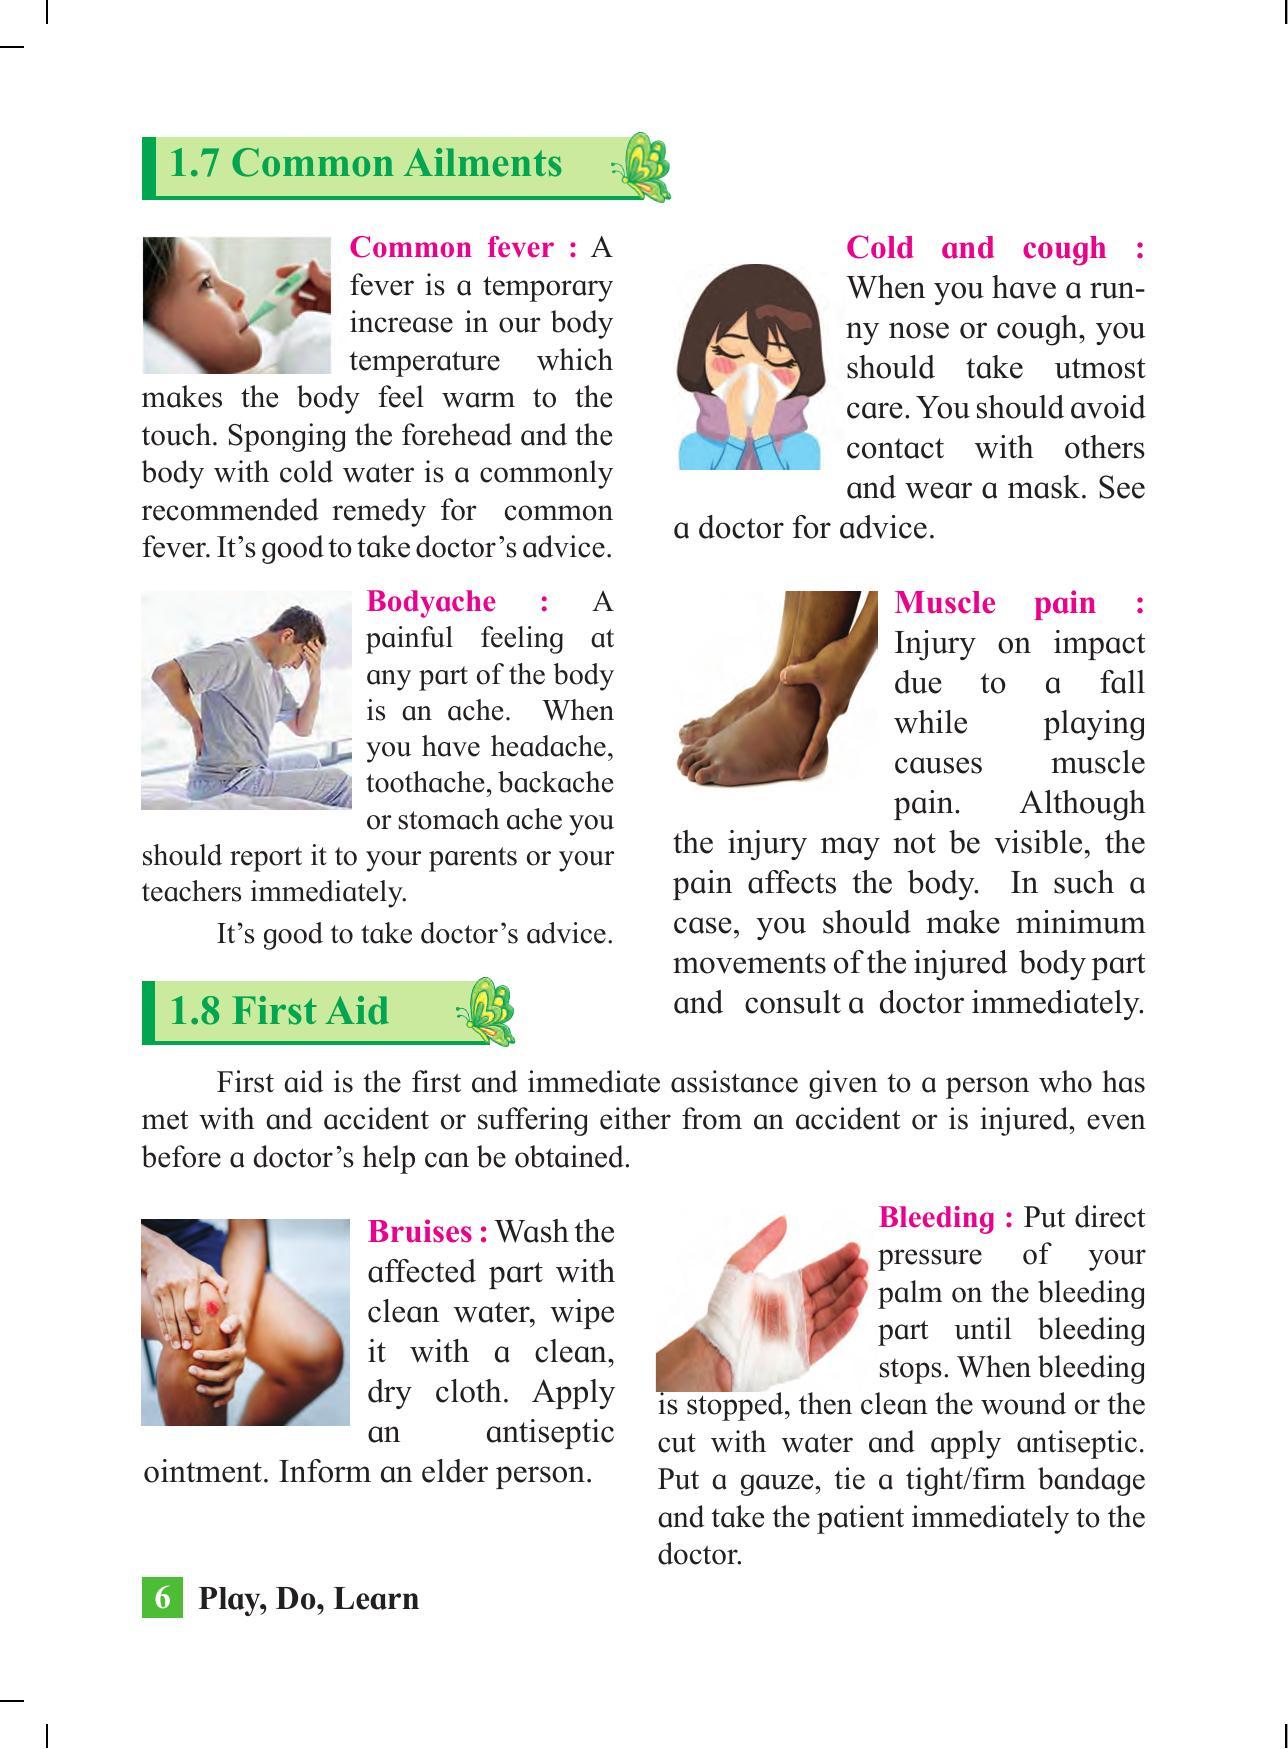 Maharashtra Board Class 4 Play Do Learn (English Medium) Textbook - Page 15